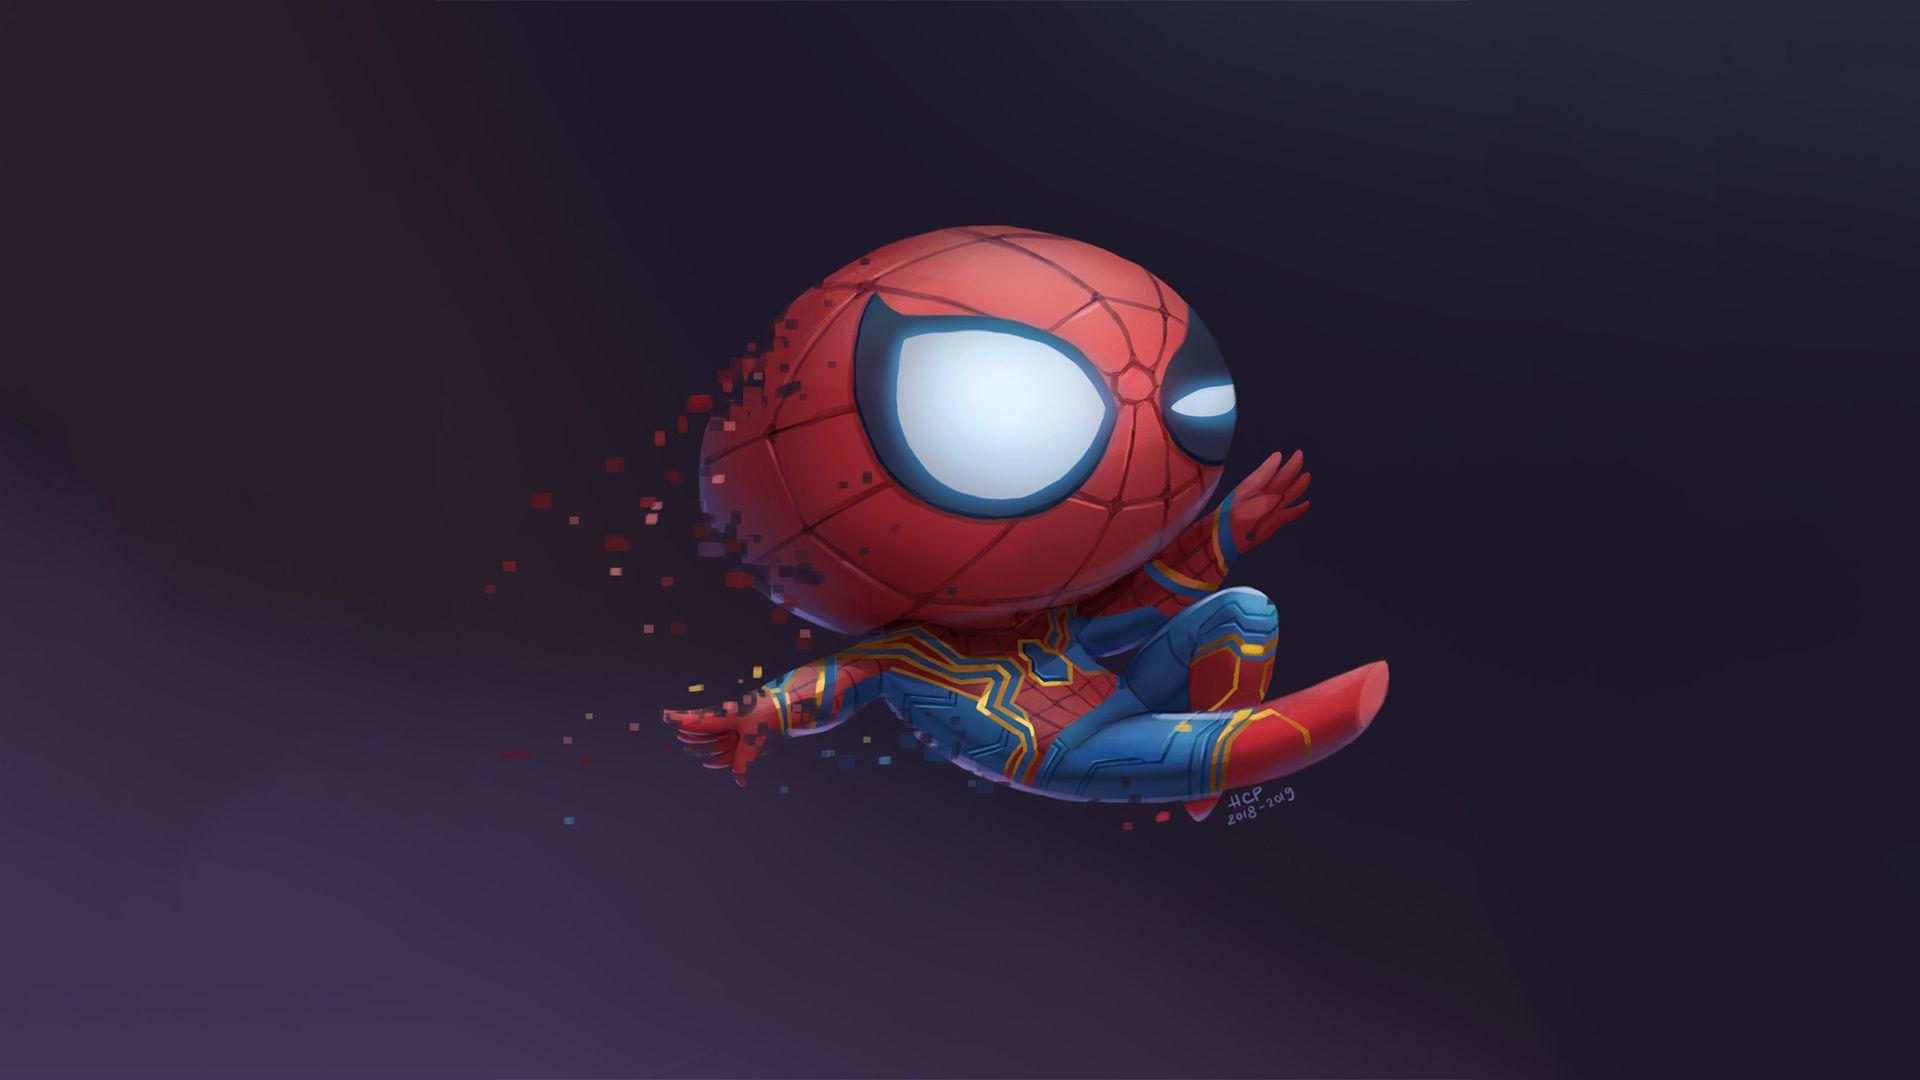 Hình nền Spiderman Chibi 2024 sẽ làm cho màn hình điện thoại của bạn trở nên dễ thương và nổi bật hơn bao giờ hết. Với hình ảnh nhân vật hoạt hình được yêu thích nhất hiện nay, bạn sẽ không thể bỏ qua sản phẩm tuyệt vời này.